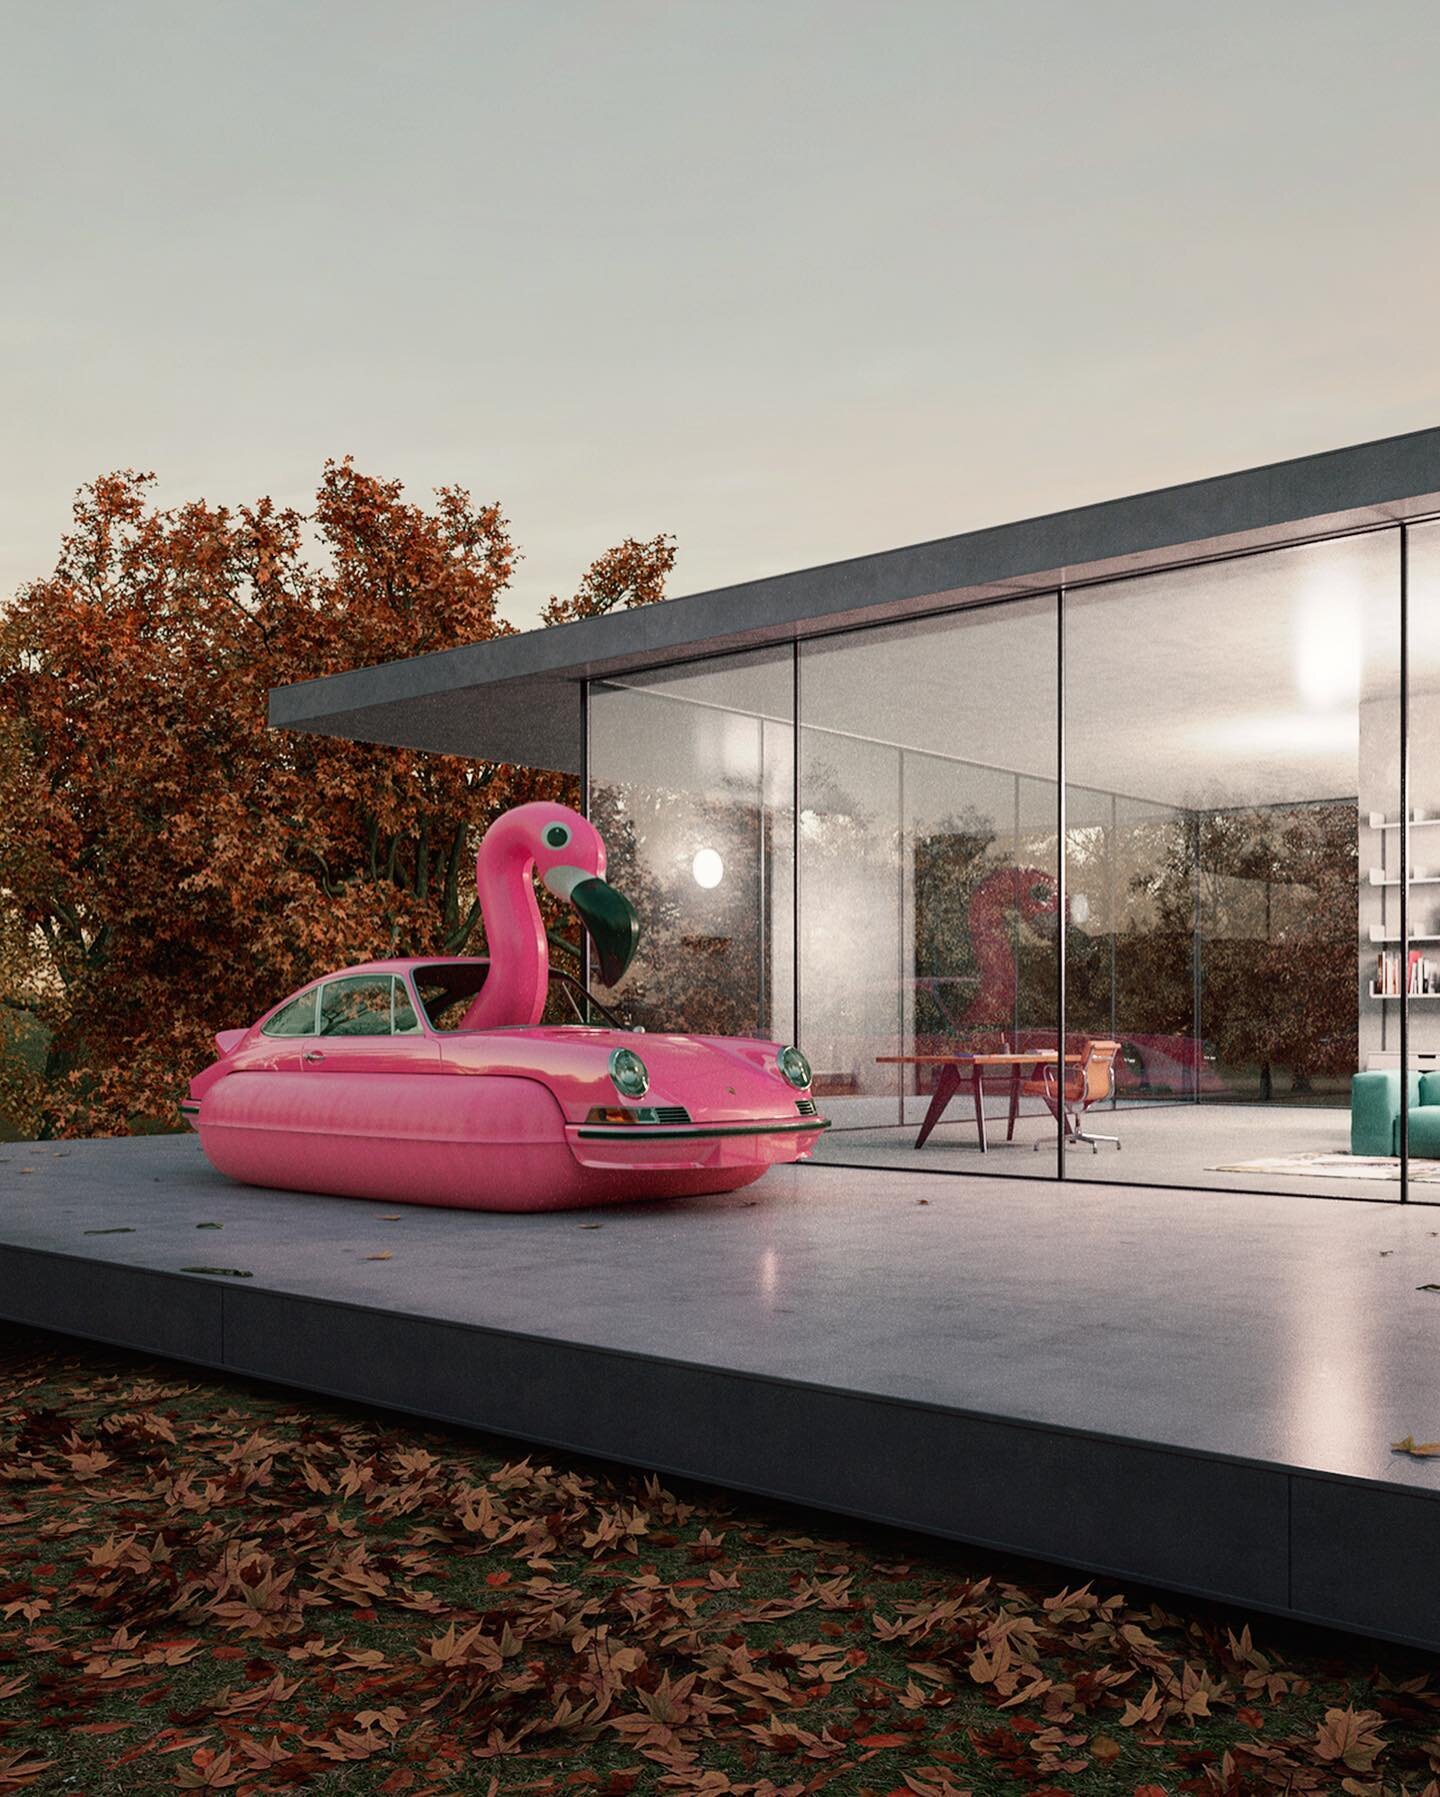 Good evening. #autumn #flamingo #porsche #pink #design #midcenturymodern #architecture